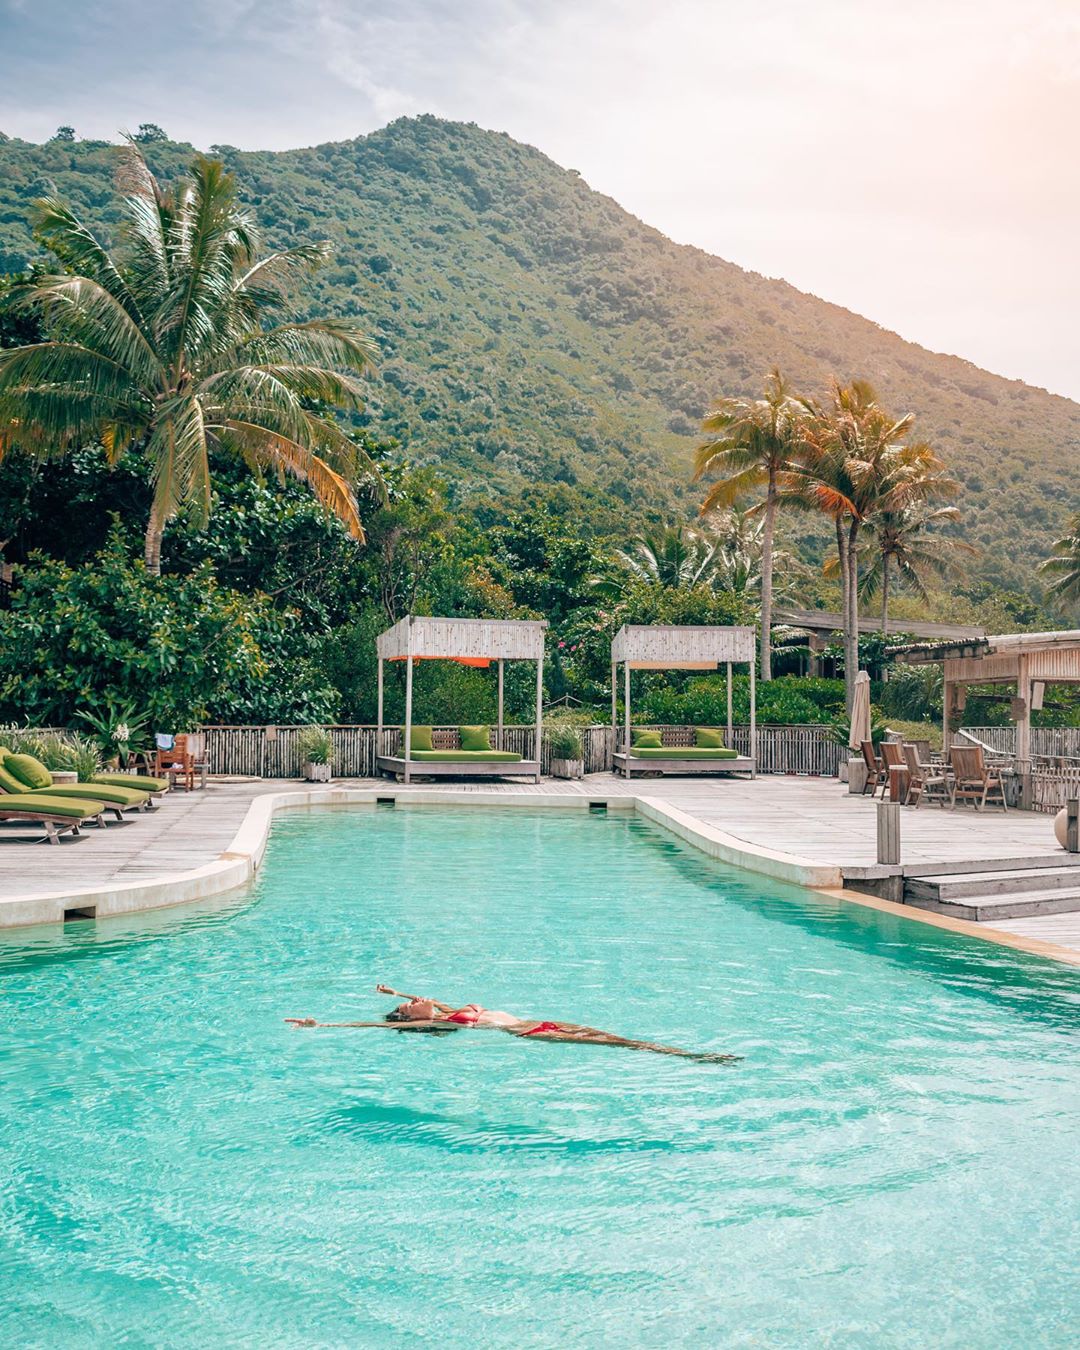 Bạn có thể đắm mình trong các bể bơi riêng biệt tại khu resort. Ảnh: @ voyagefox_.